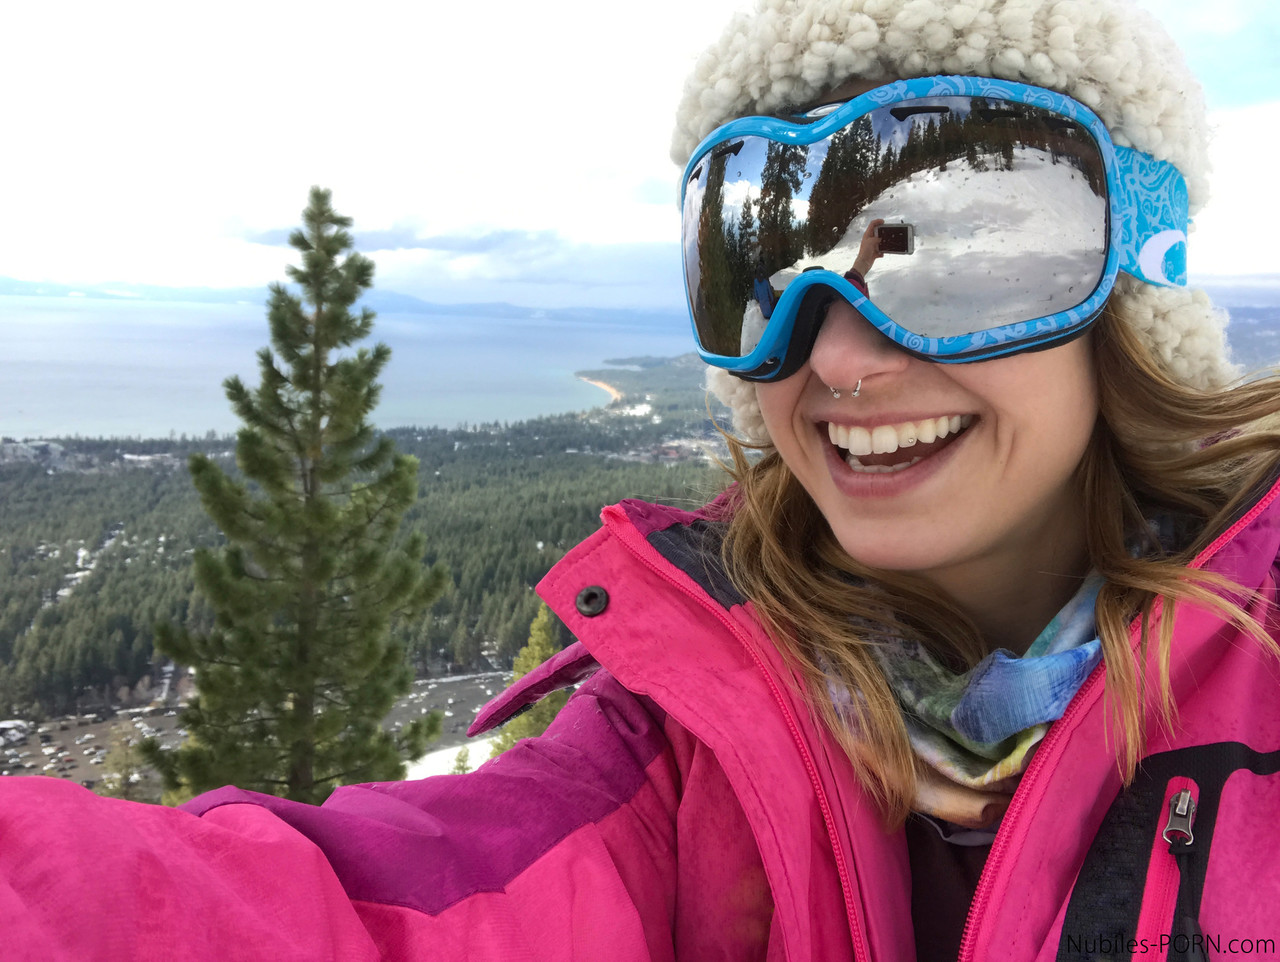 Sexy snowboarders Sierra Nicole & Kristen Scott have pre-FFM fun on the slopes photo porno #427844908